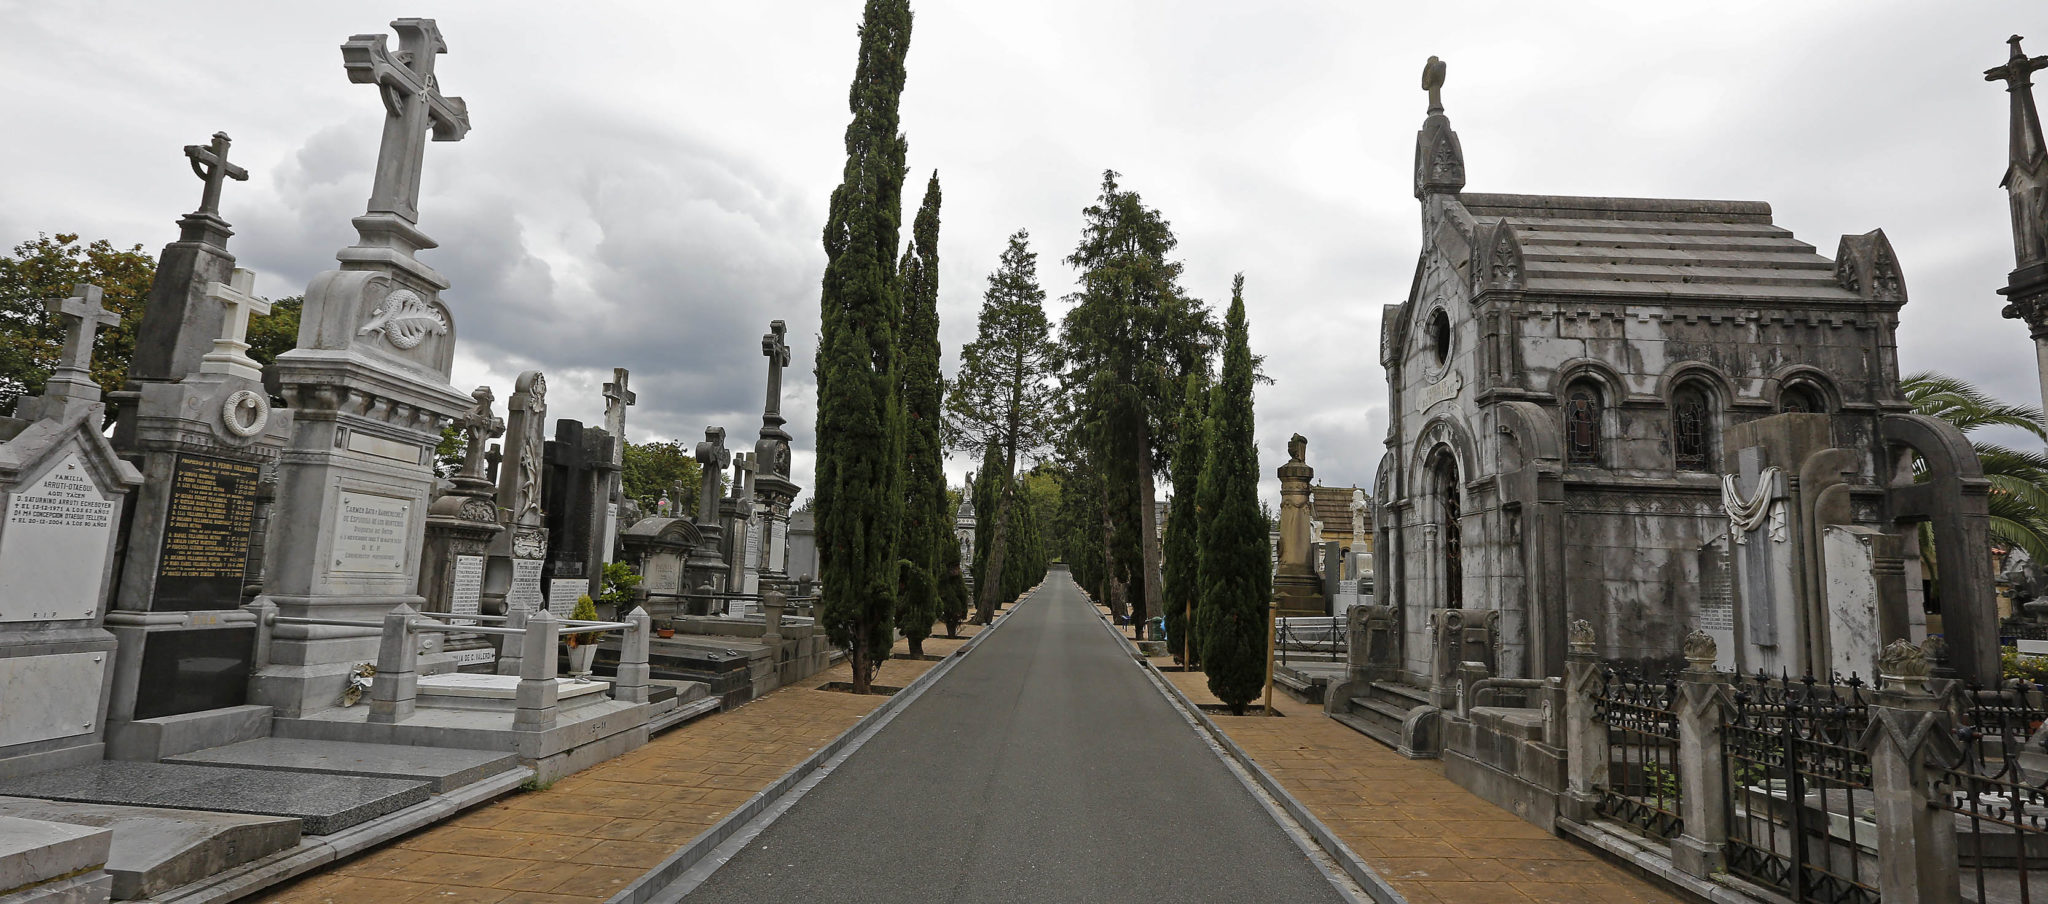 cementerio de polloe san sebastian